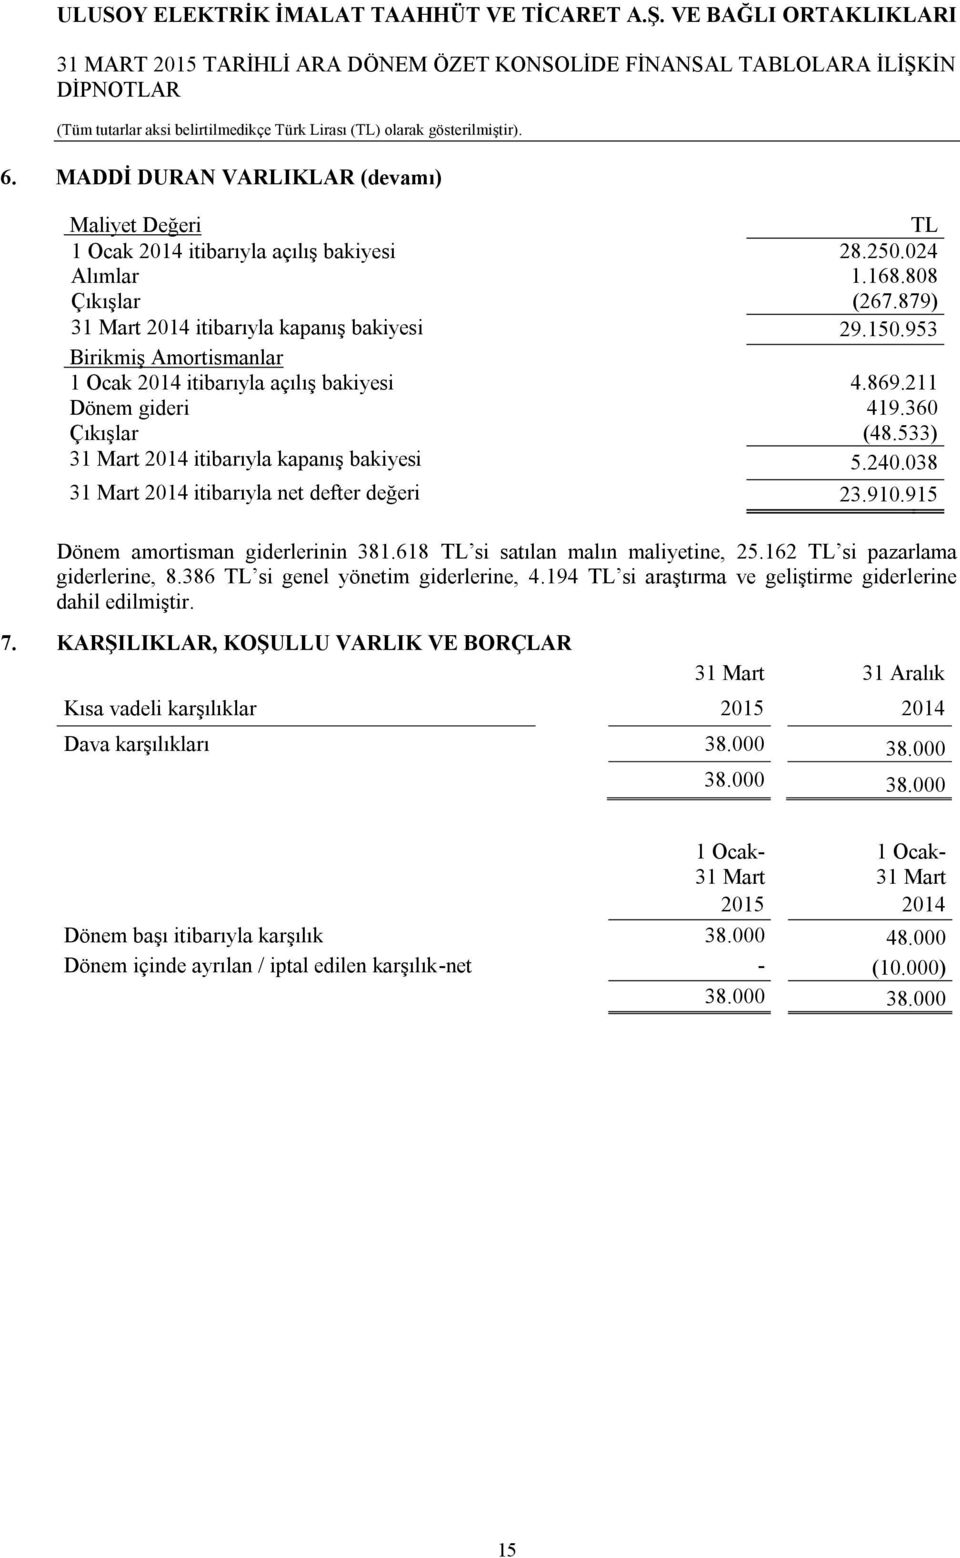 038 31 Mart 2014 itibarıyla net defter değeri 23.910.915 Dönem amortisman giderlerinin 381.618 TL si satılan malın maliyetine, 25.162 TL si pazarlama giderlerine, 8.